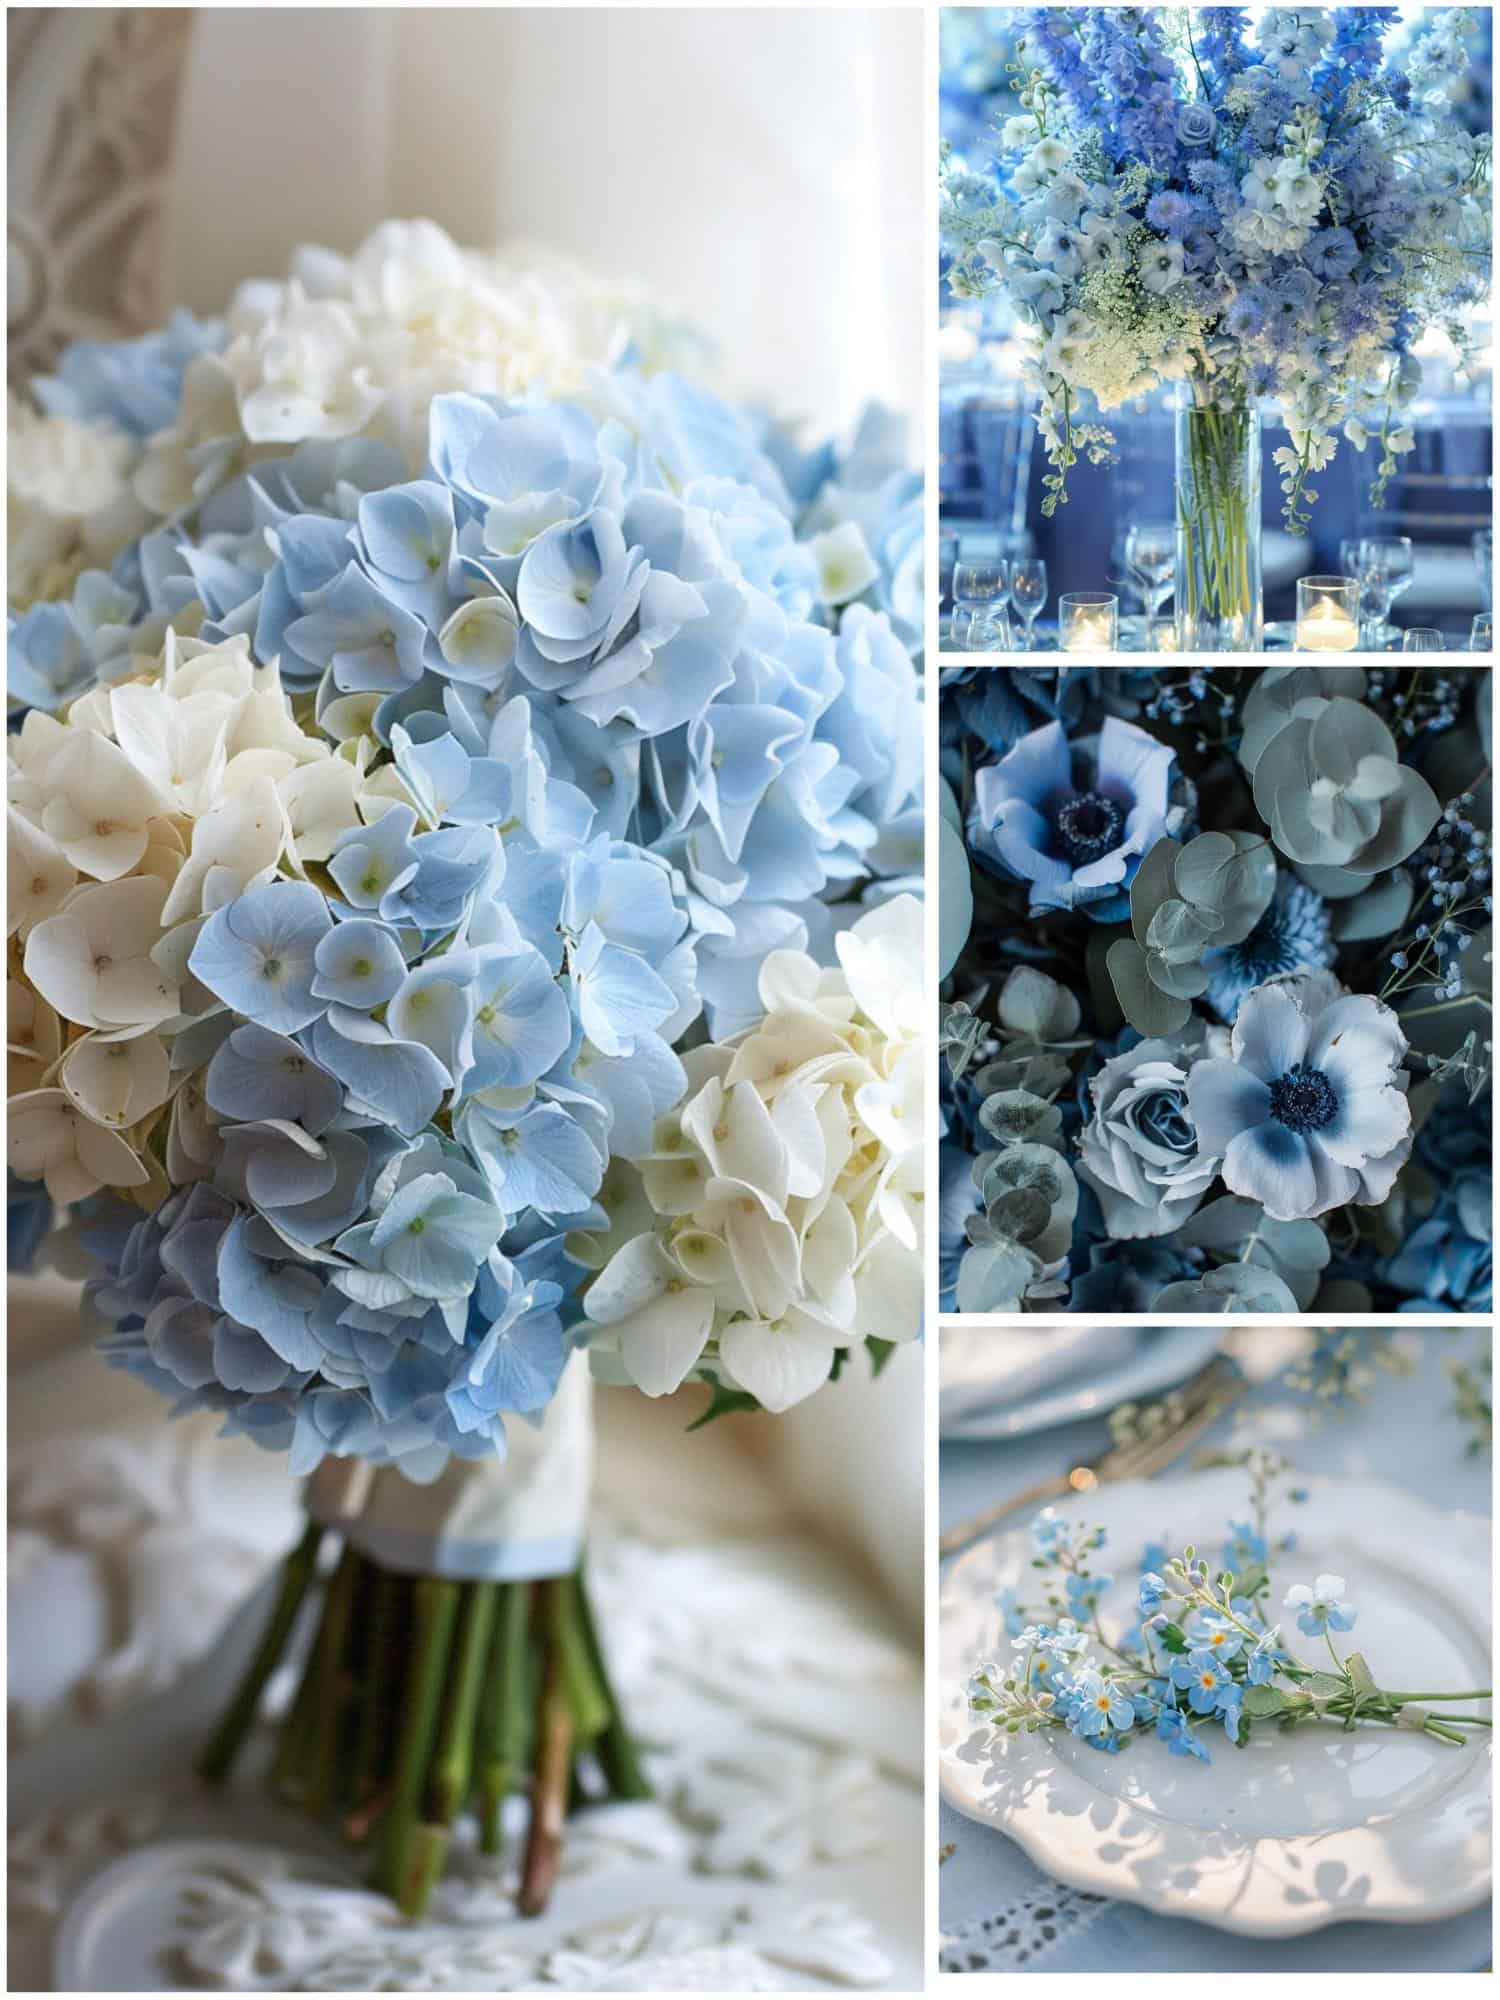 floral arrangements with light blue details